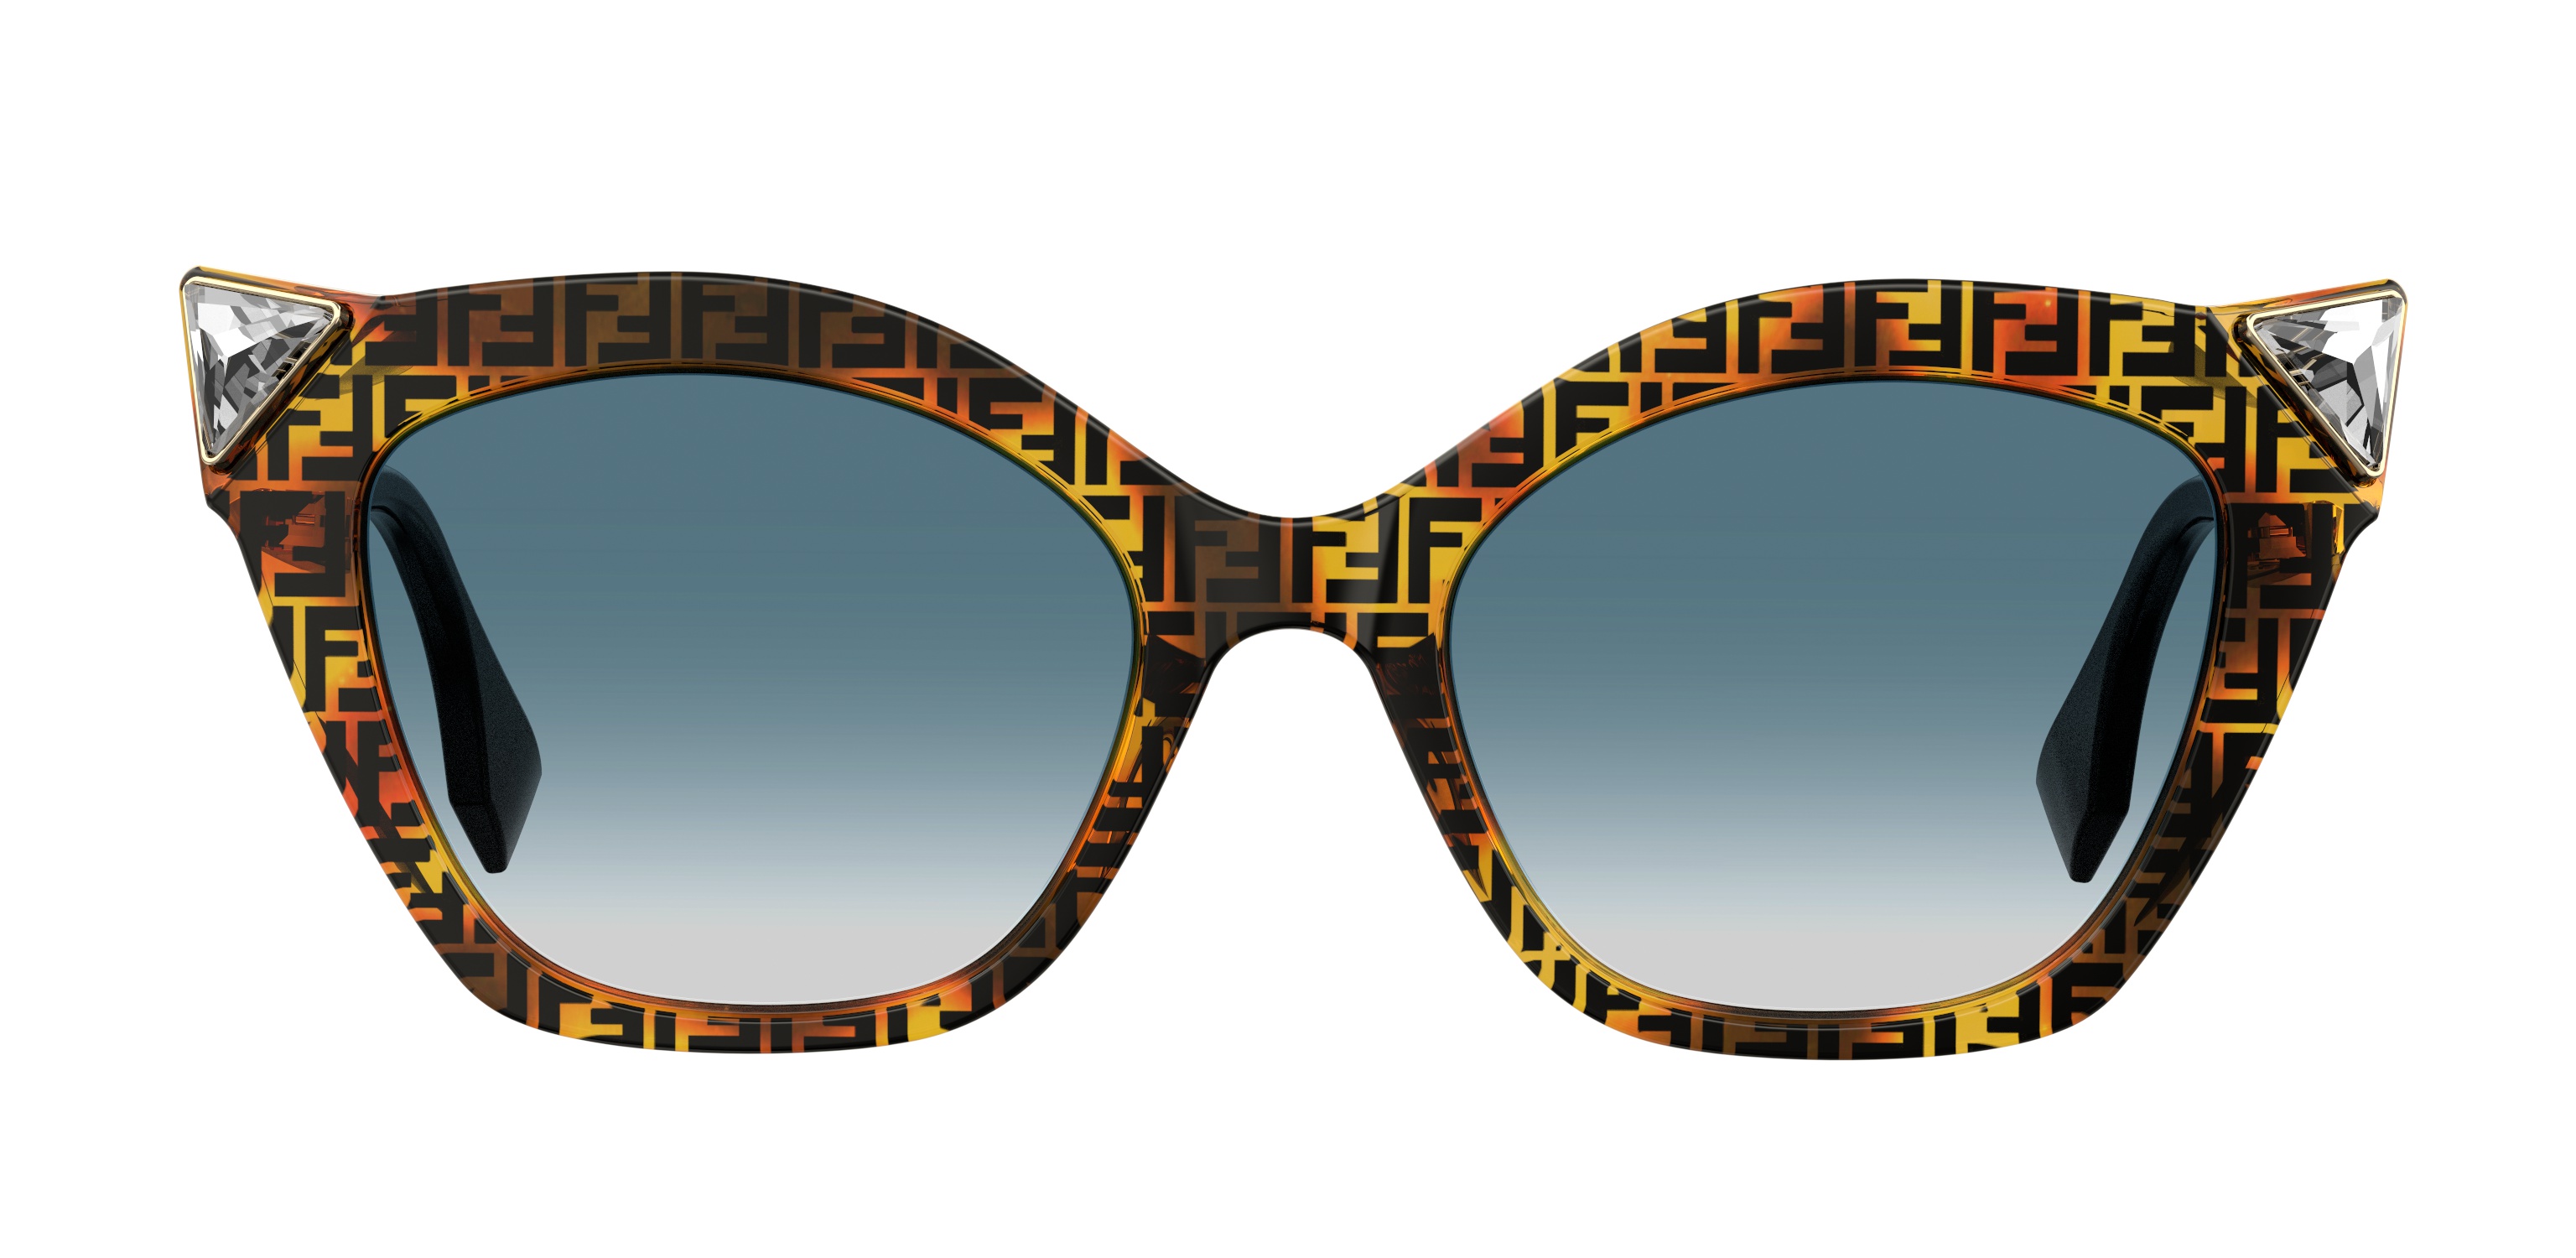 Οδηγός Αγοράς: 12 ζευγάρια γυαλιά ηλίου σε γήινες αποχρώσεις για κομψές, ανοιξιάτικες εμφανίσεις